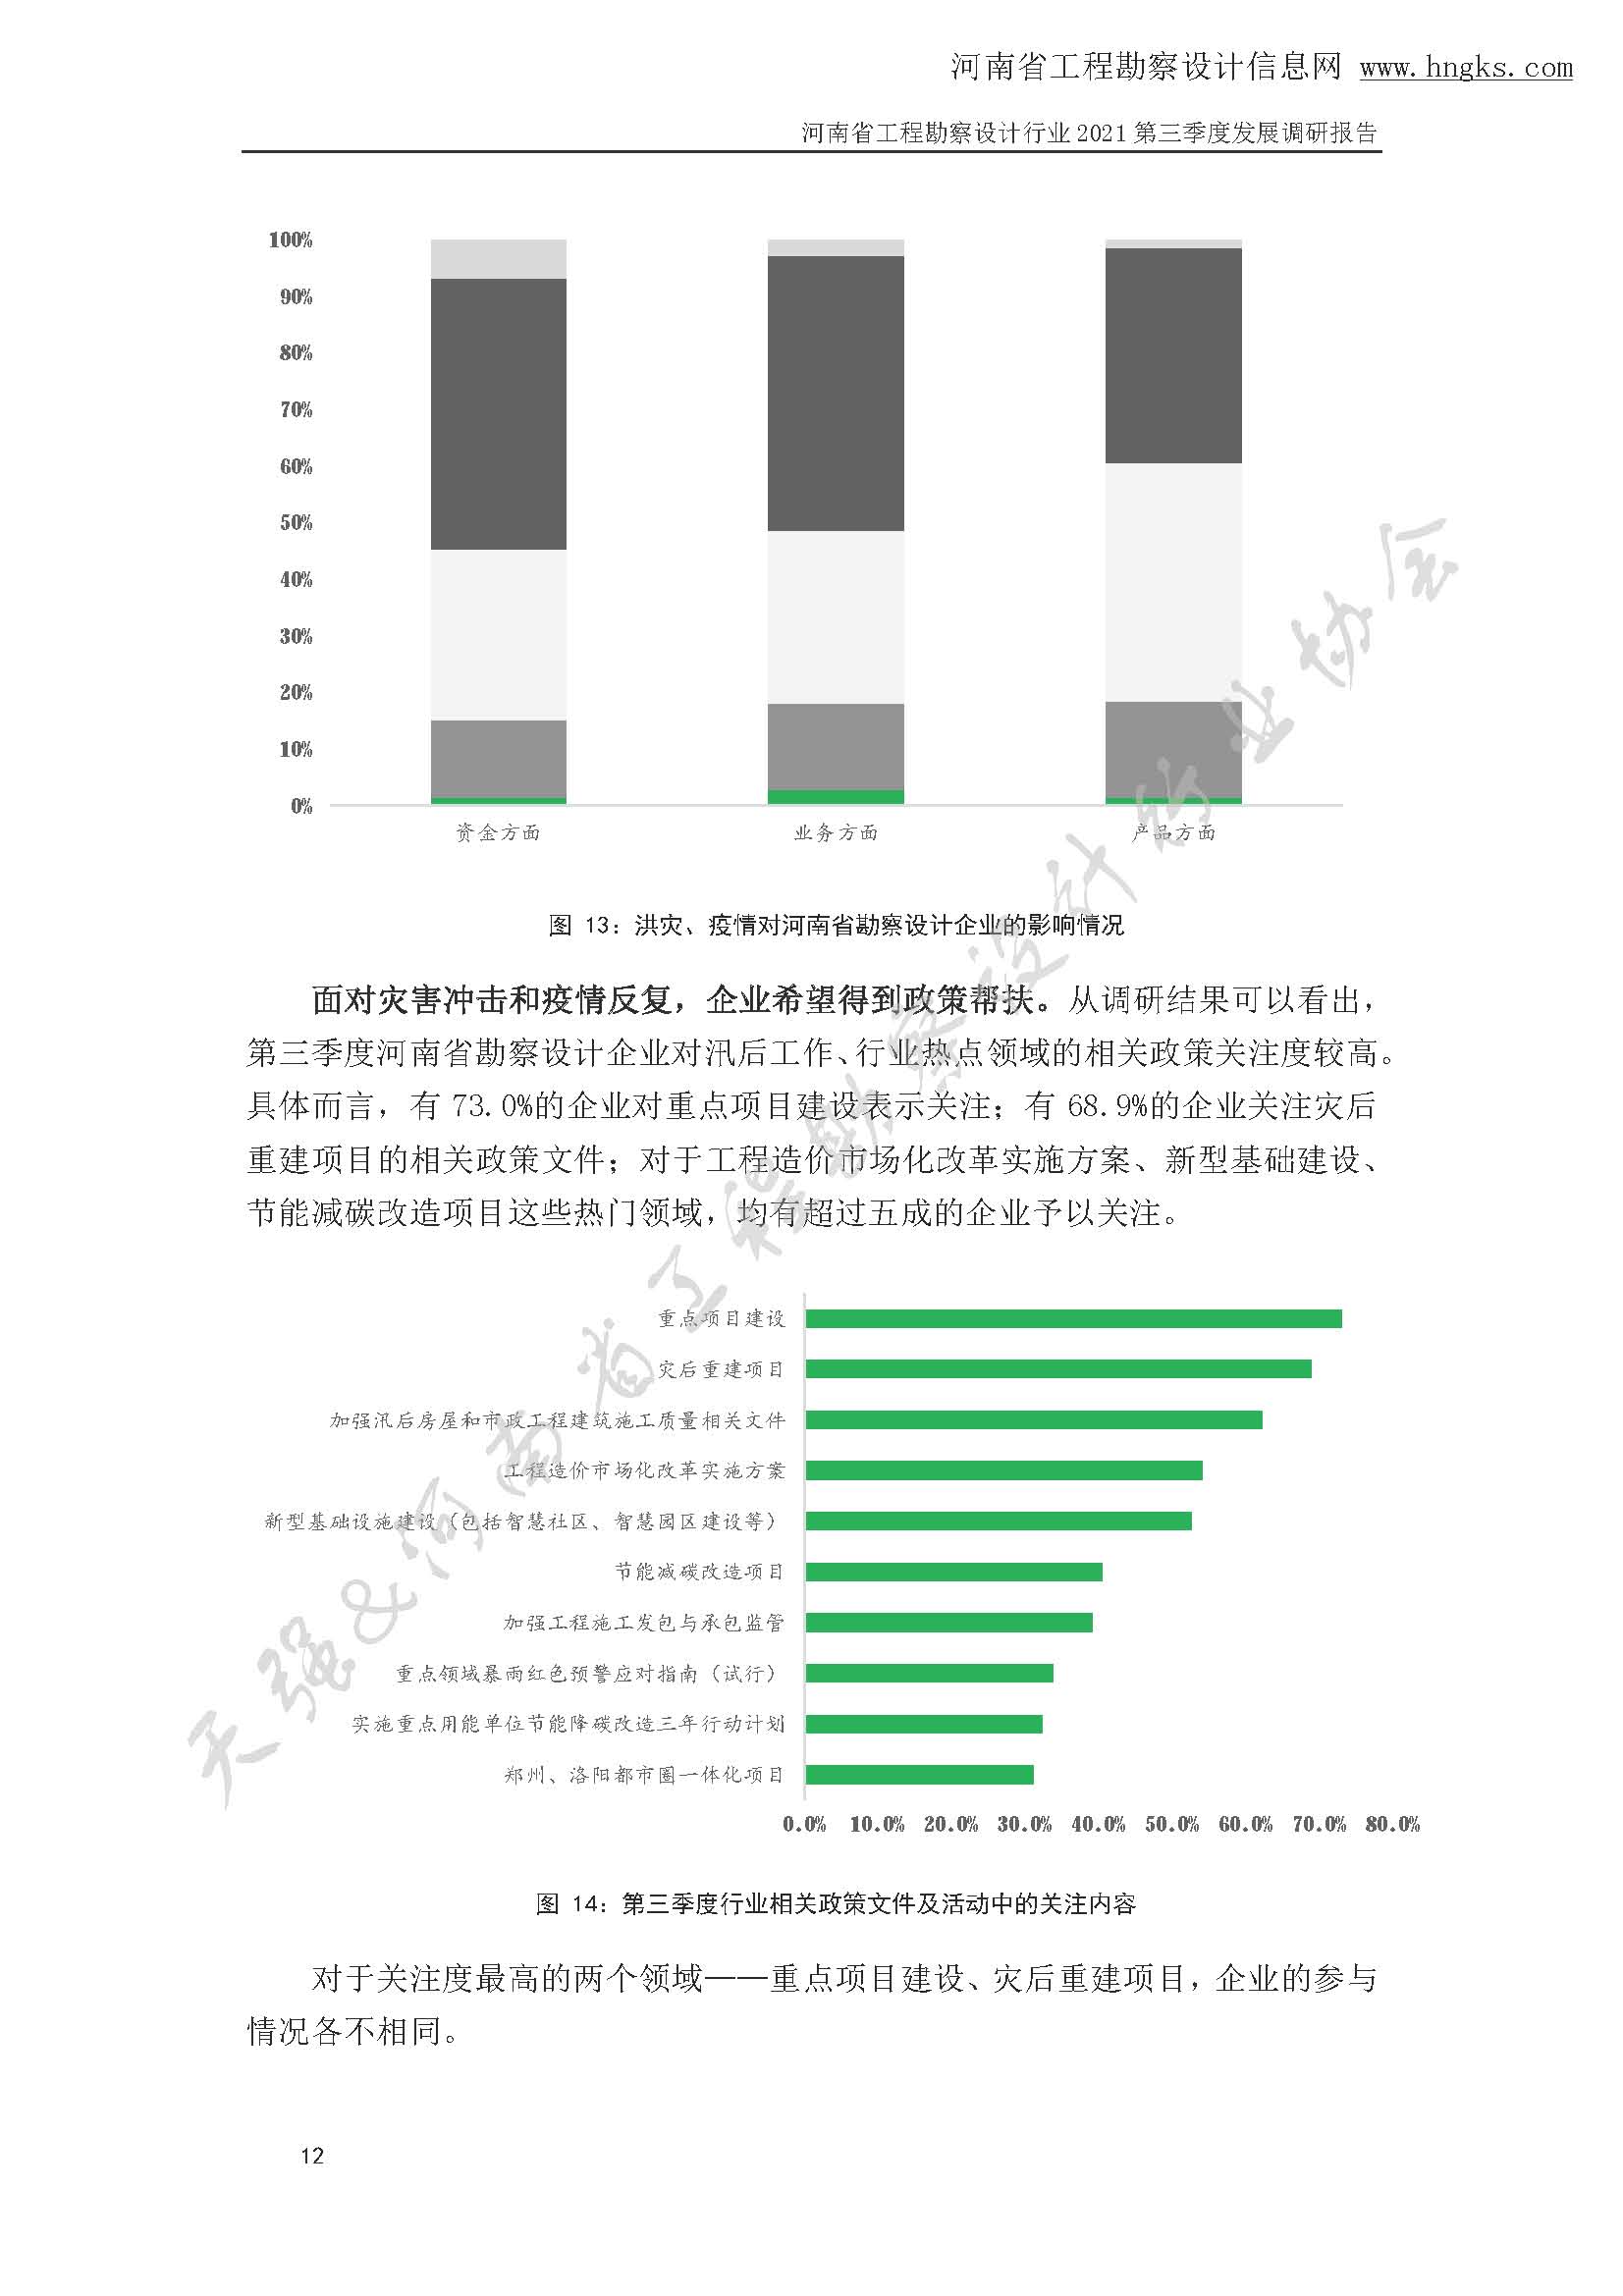 河南省工程勘察设计企业2021年第三季度发展调研报告-公开版_页面_15.jpg